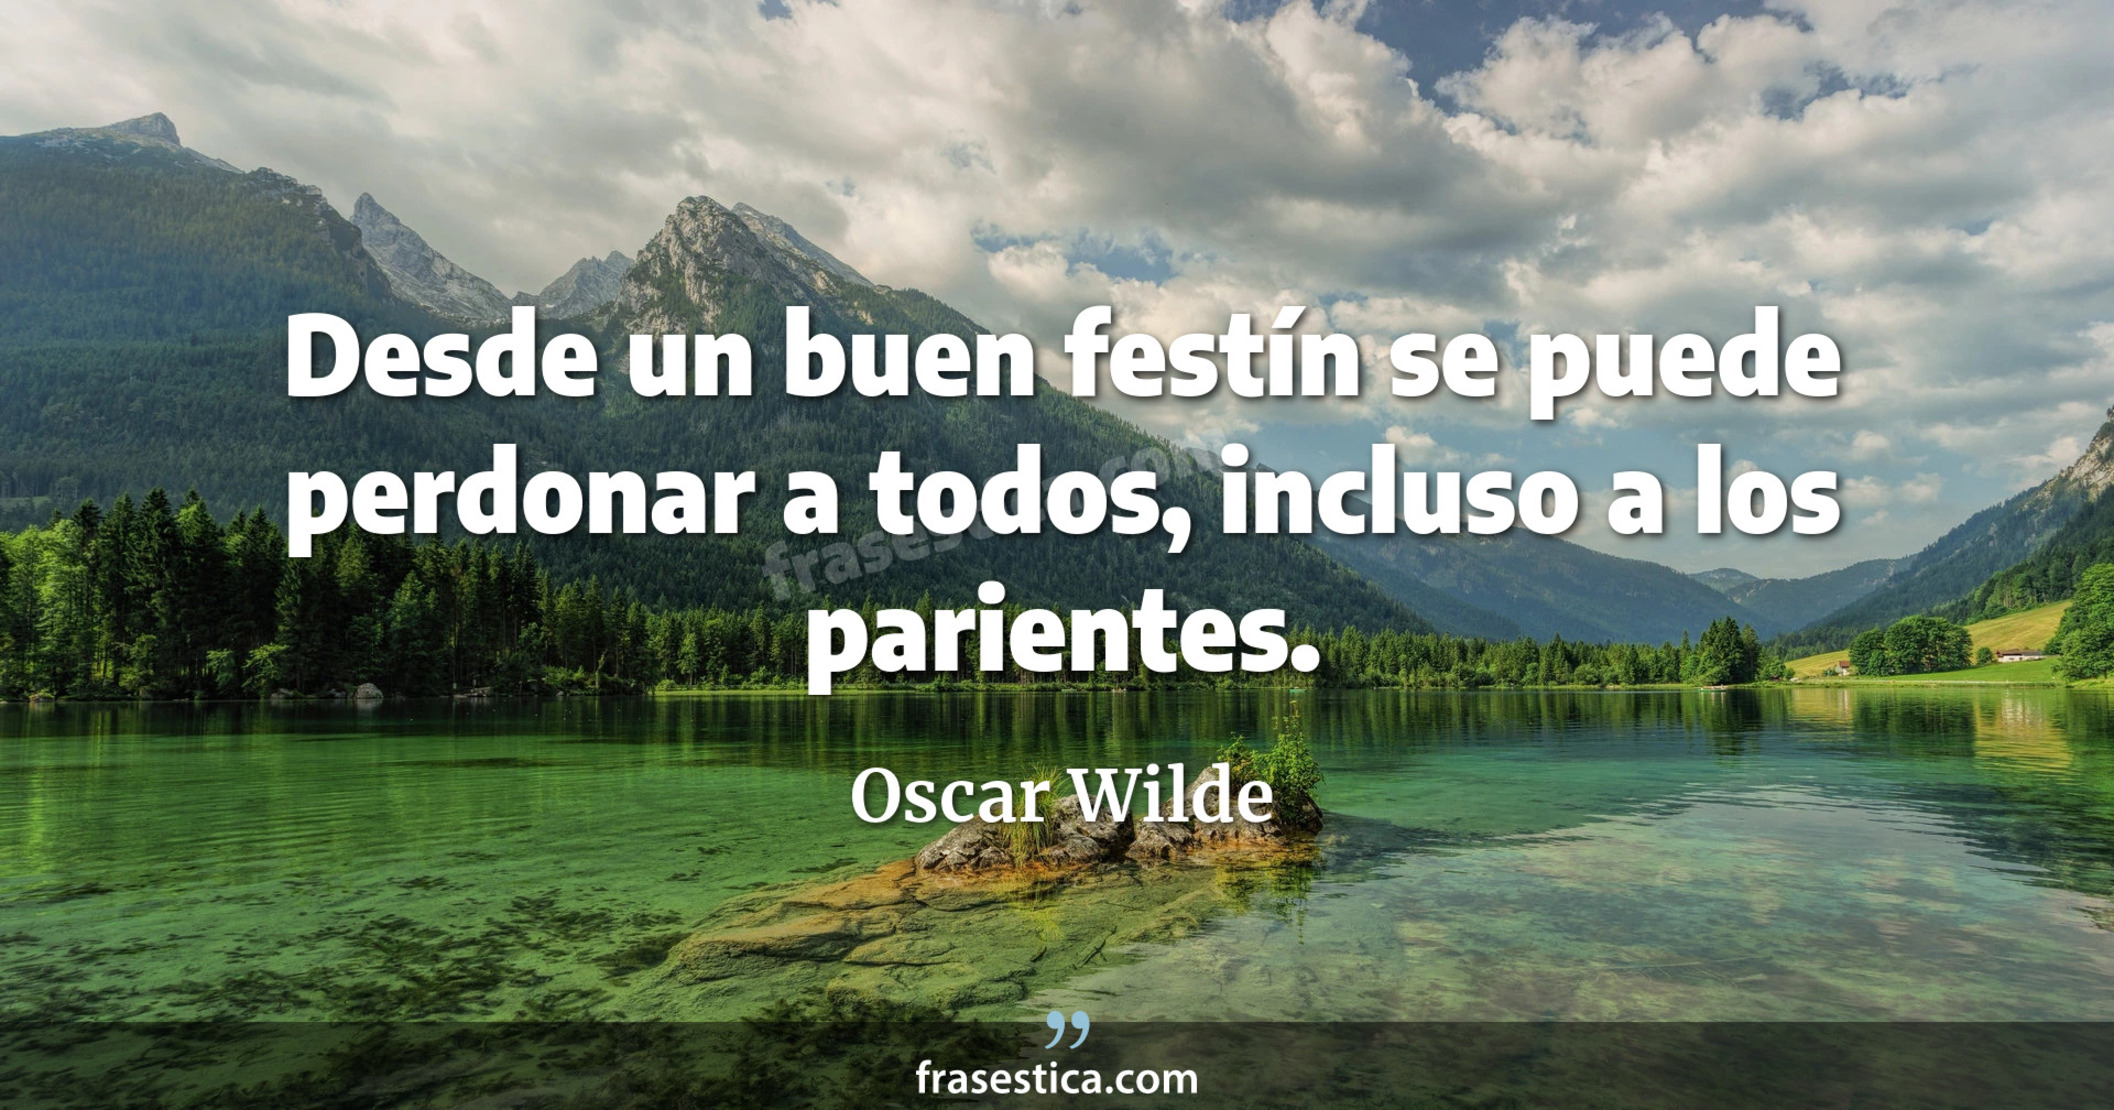 Desde un buen festín se puede perdonar a todos, incluso a los parientes. - Oscar Wilde